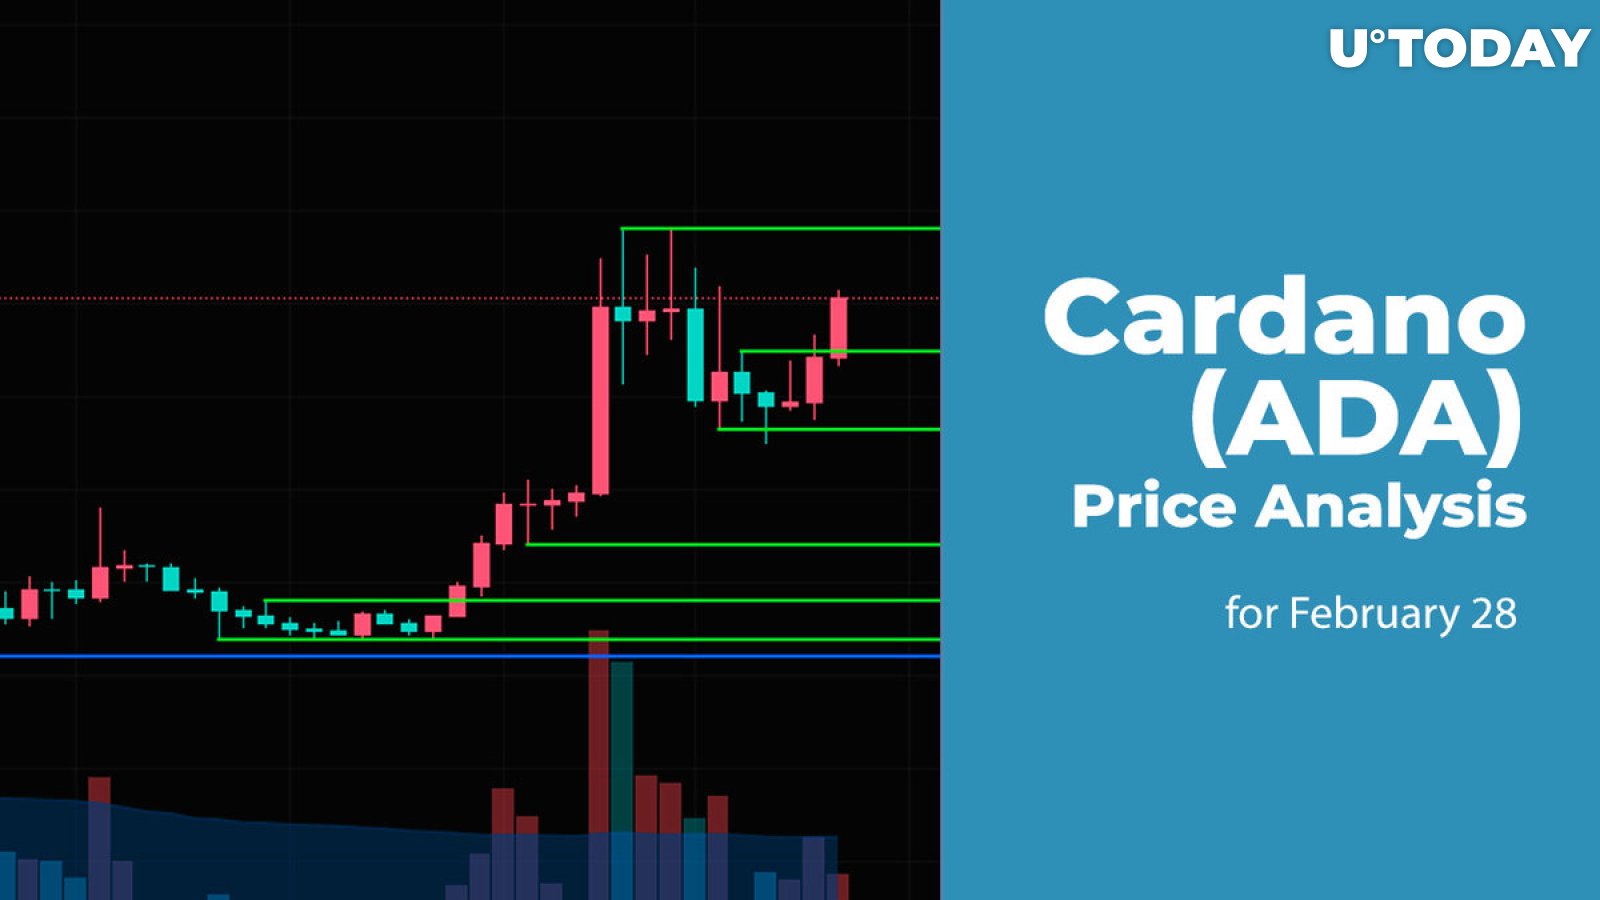 Cardano (ADA) Price Prediction for February 28